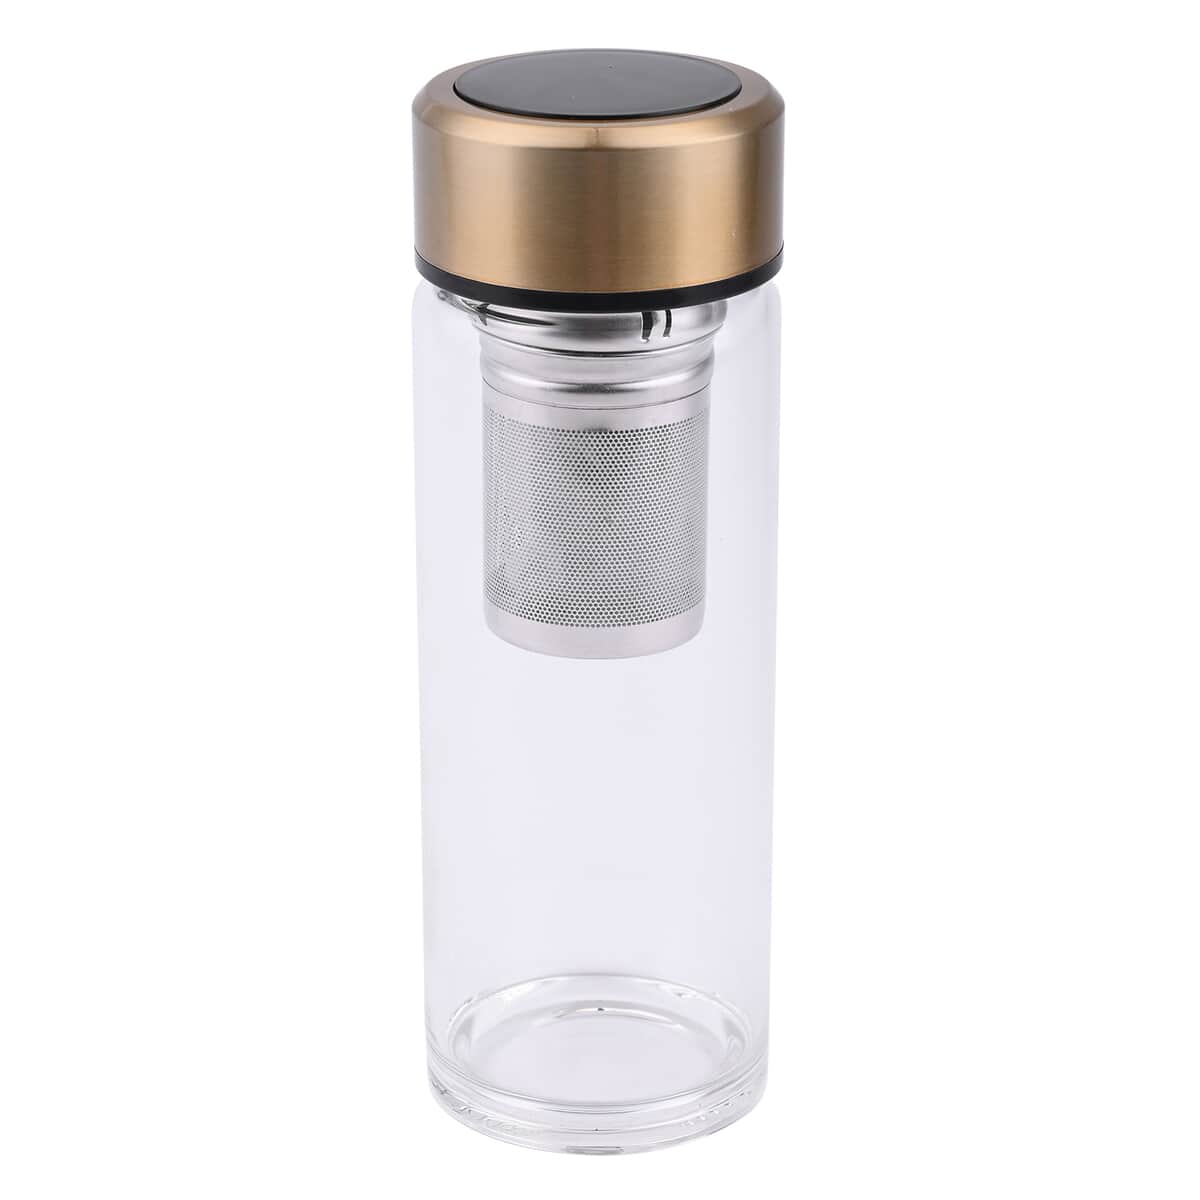 Elite Shungite Filter Infuser and Temperature Sensor Smart Water Bottle (LED Display, Long Filter) - Gold image number 0